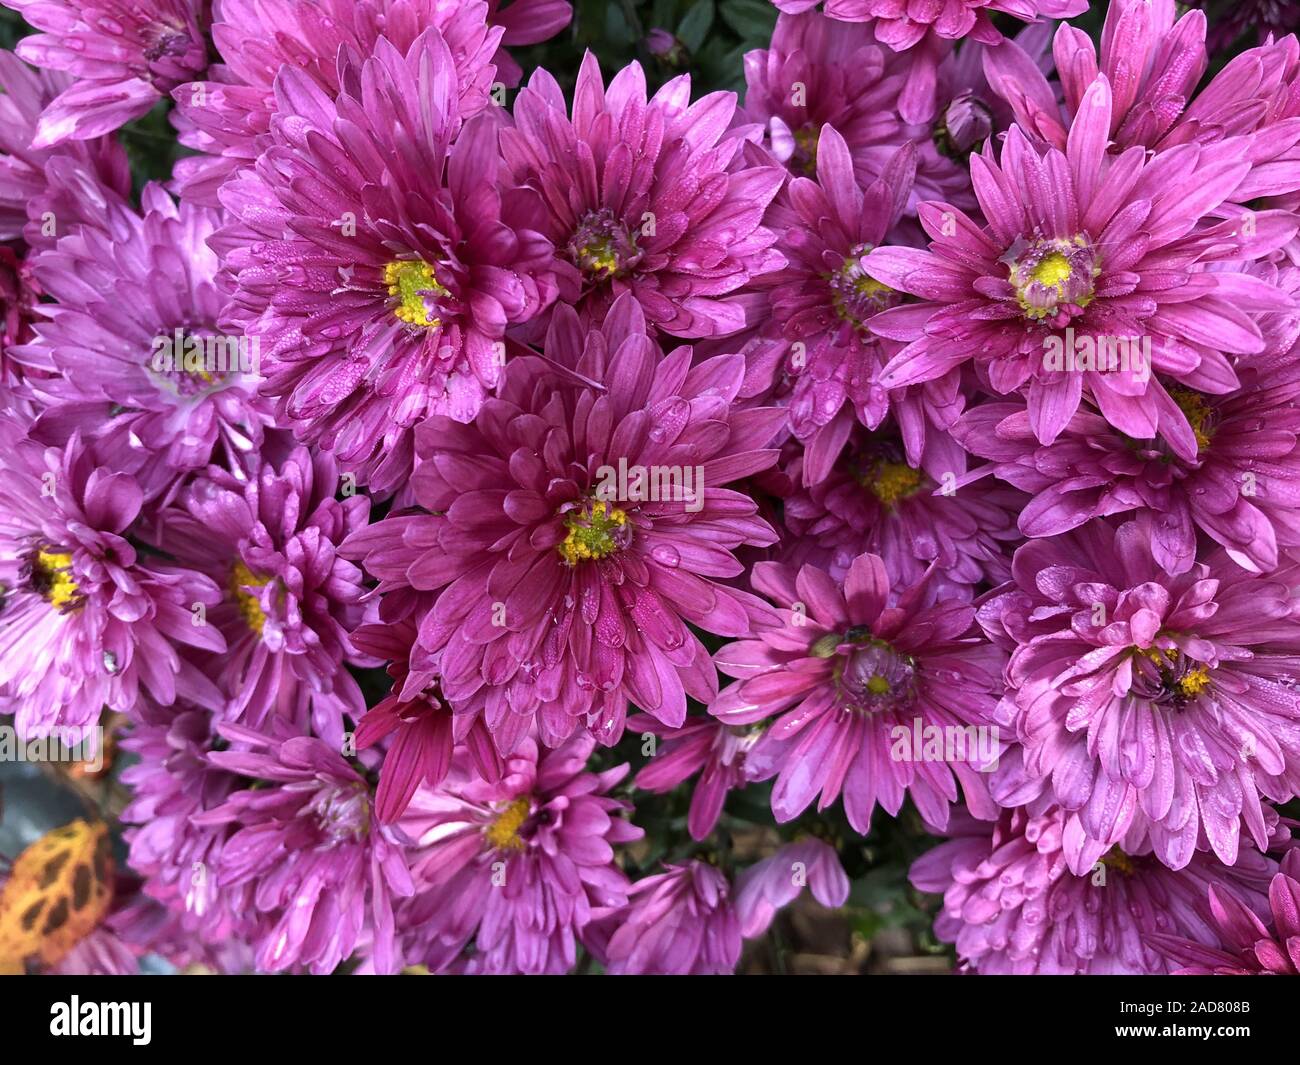 Herbstastern, Chrysanthemen Blüten, pink, chrysanth, chrysanthemum Stock Photo